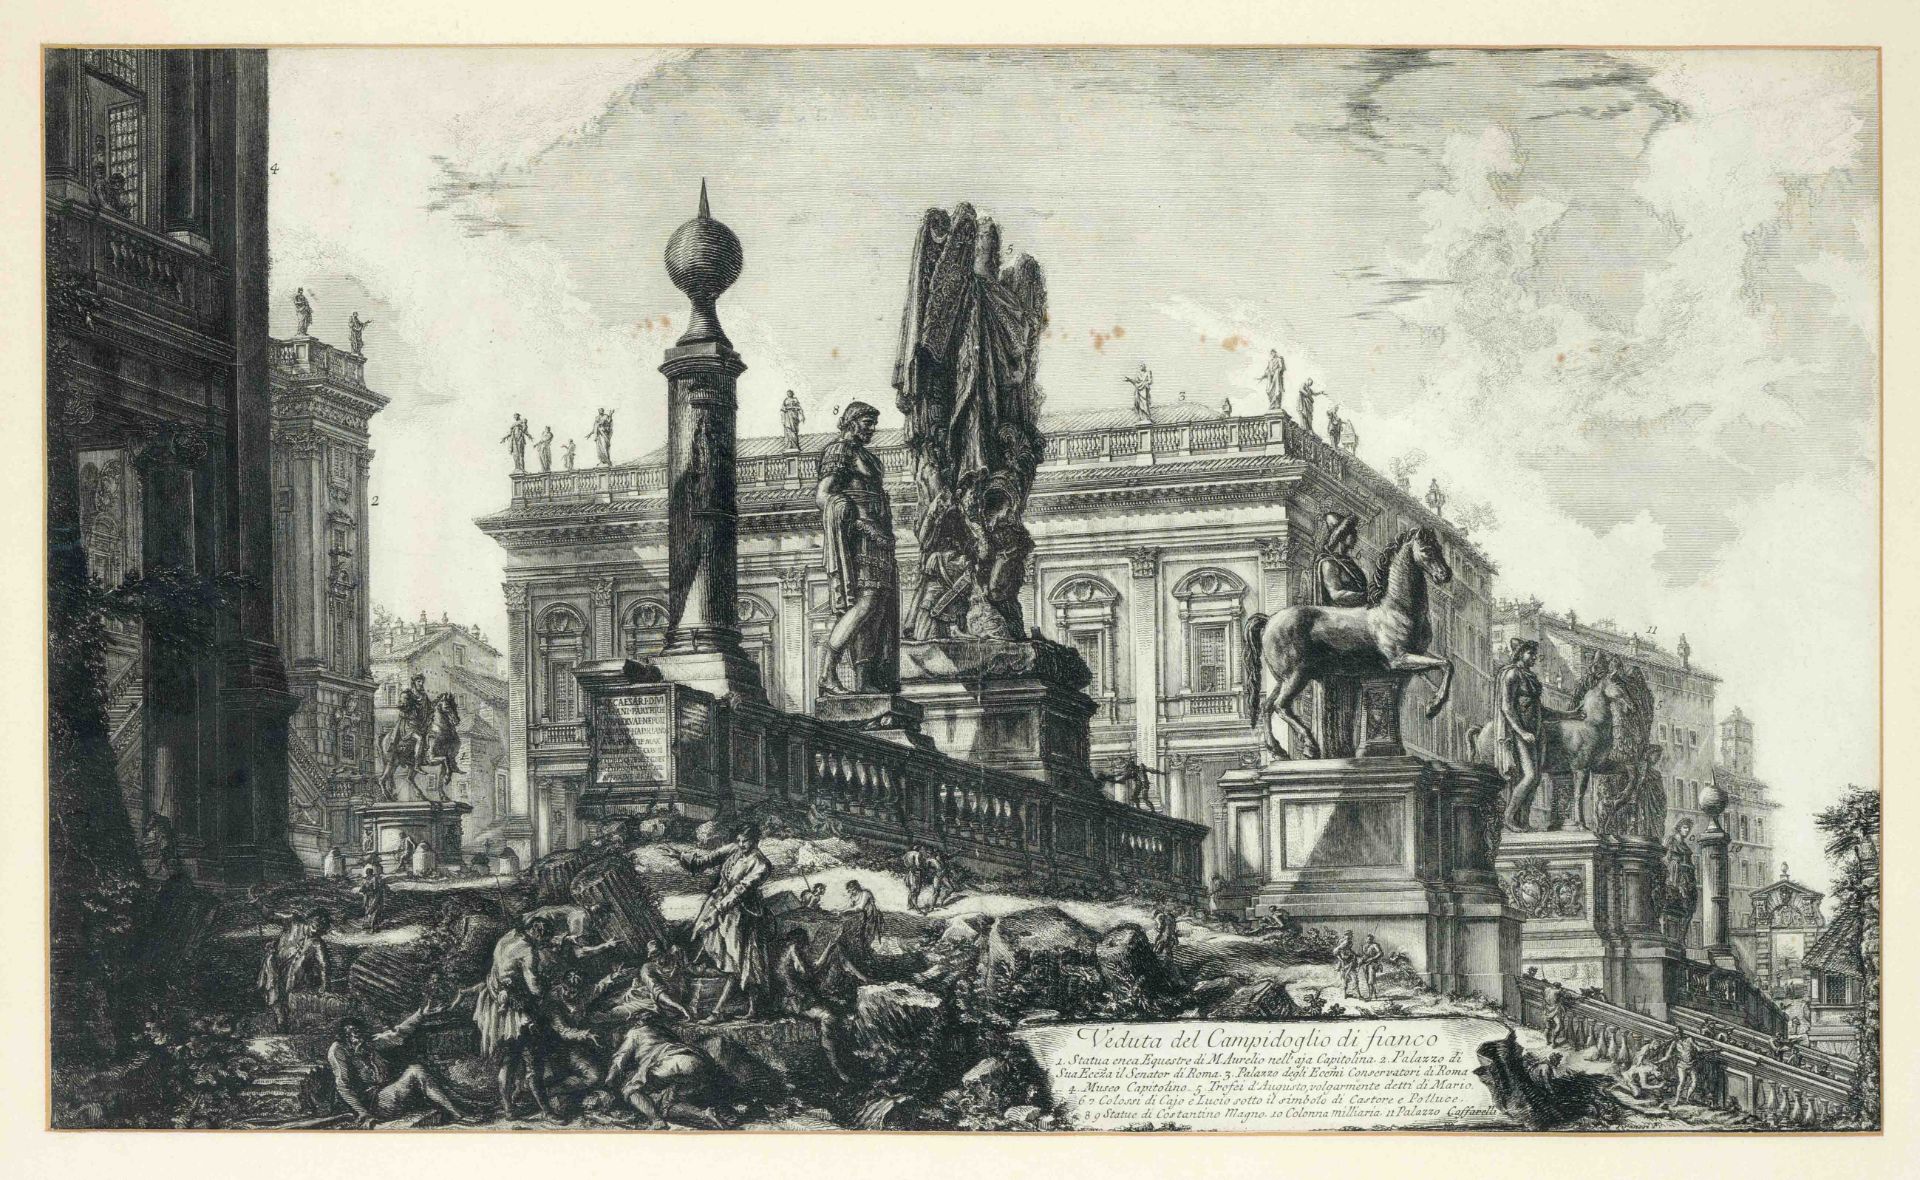 Giovanni Battista Piranesi (1720-1778), ''Veduta del Campidoglio di Fianco'', etching, somewhat